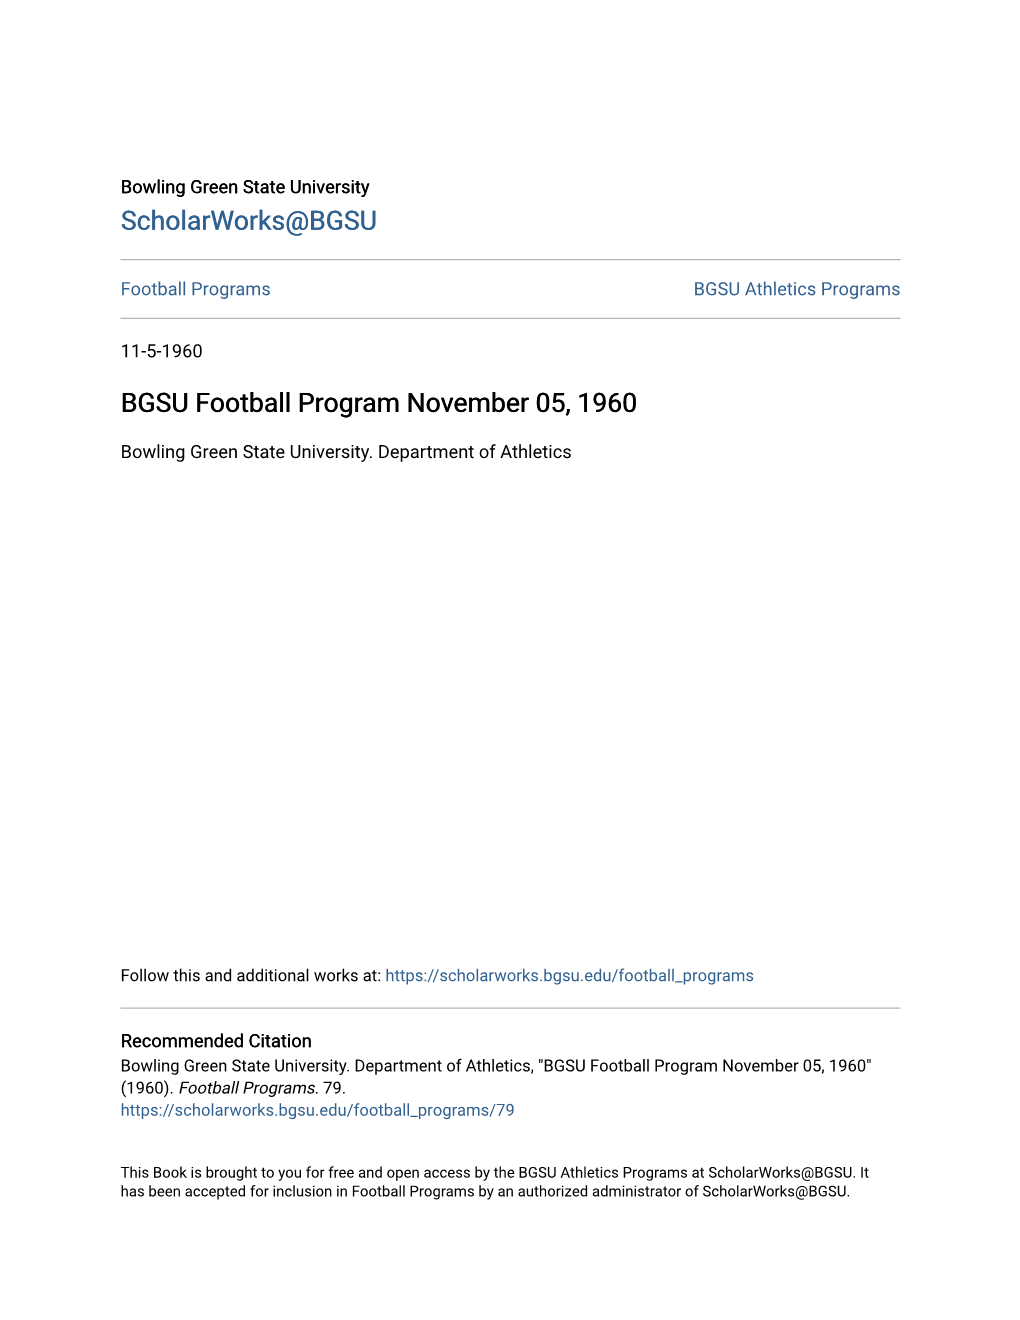 BGSU Football Program November 05, 1960